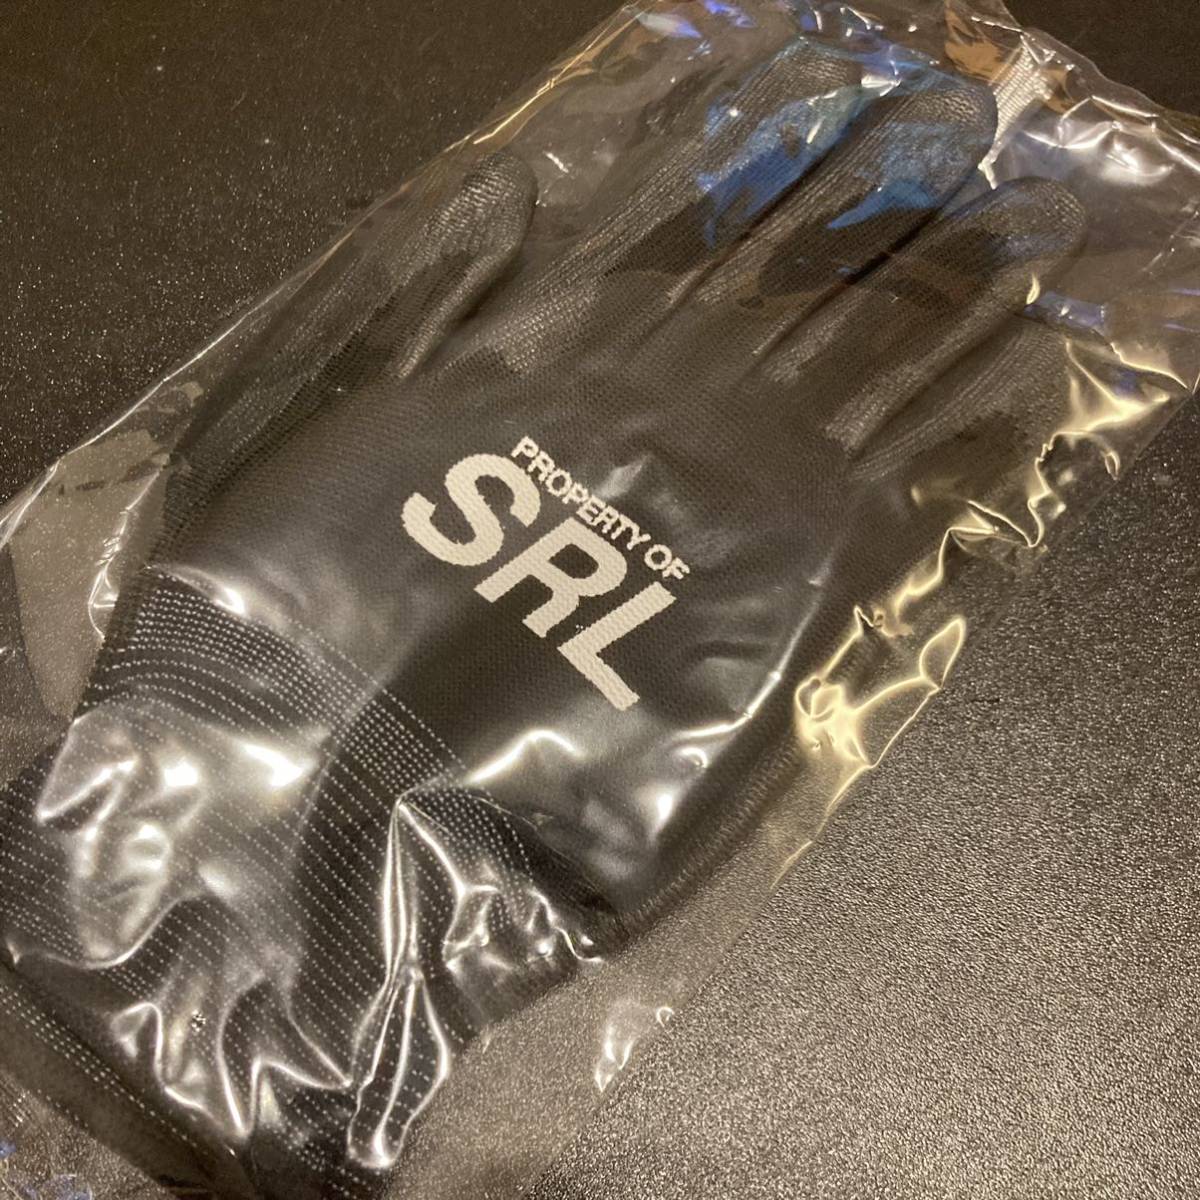  новый товар   нераспечатанный NEIGHBORHOOD SRL / E-GLOVE 1 комплект   ...  черный   черный   перчатки ... мешок   растение  NBHD